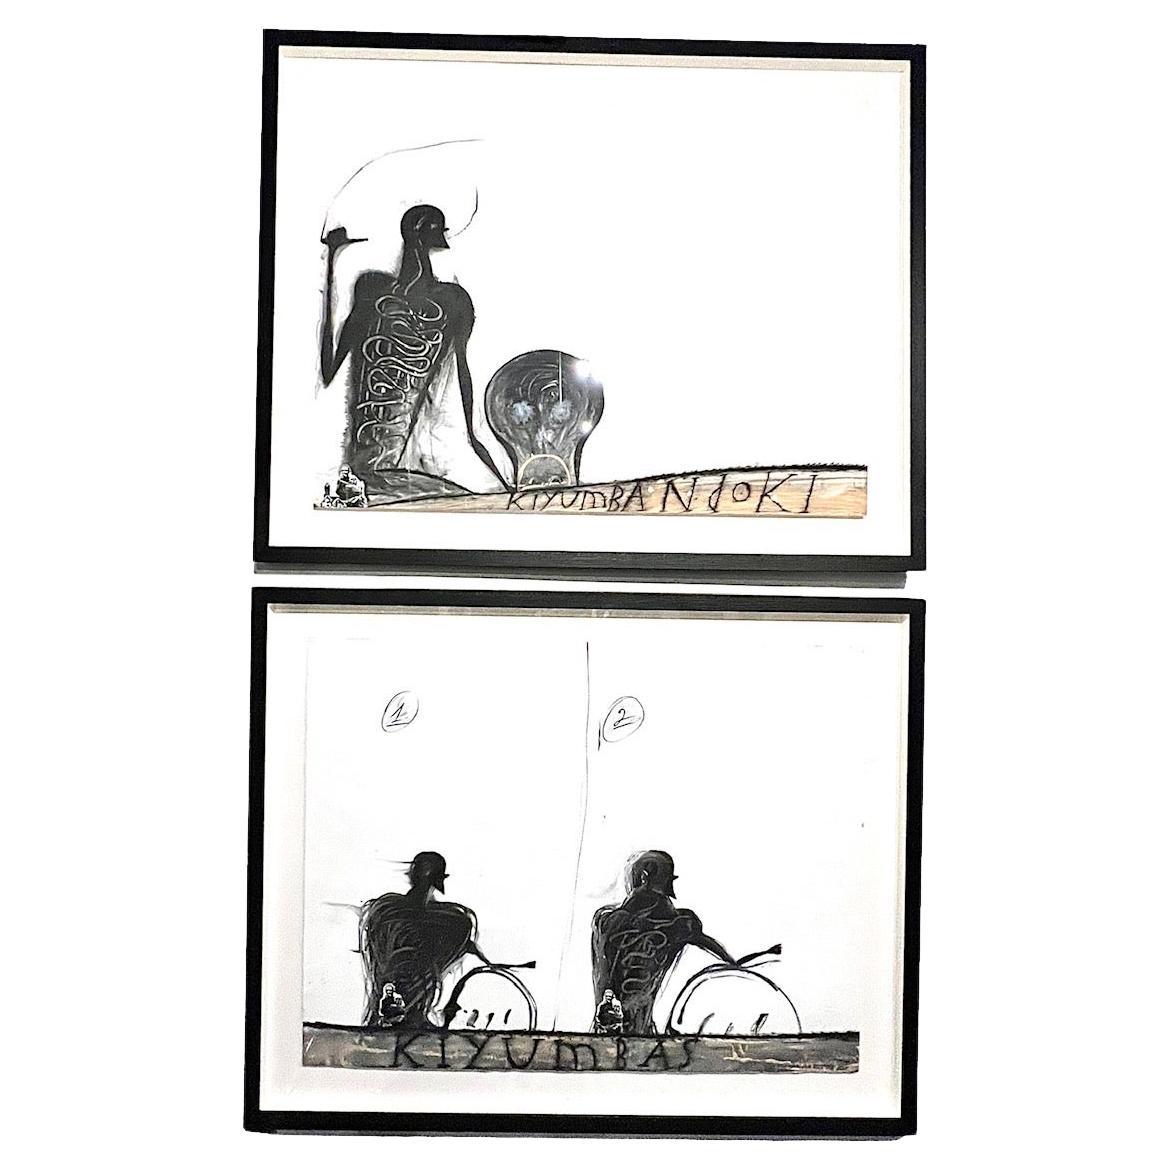 Découvrez un authentique joyau de l'art contemporain - un chef-d'œuvre abstrait sur papier, peint à la main en 1998 par le célèbre artiste cubain Jose Bedia. Bedia est célèbre pour son style figuratif néo-primitiviste distinctif, une approche qui a